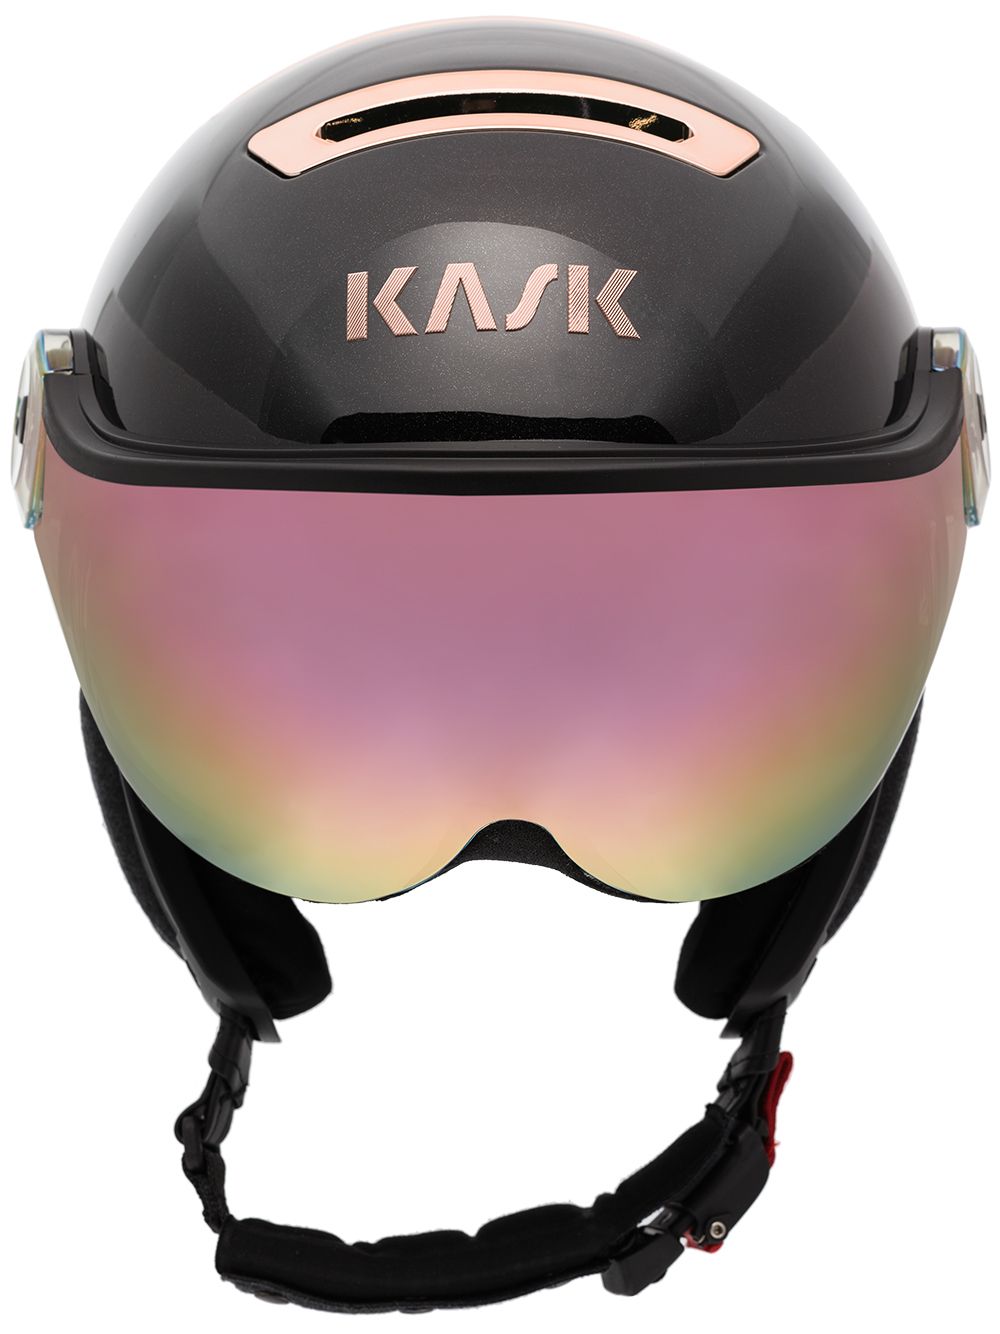 фото Kask лыжный шлем piuma r chrome